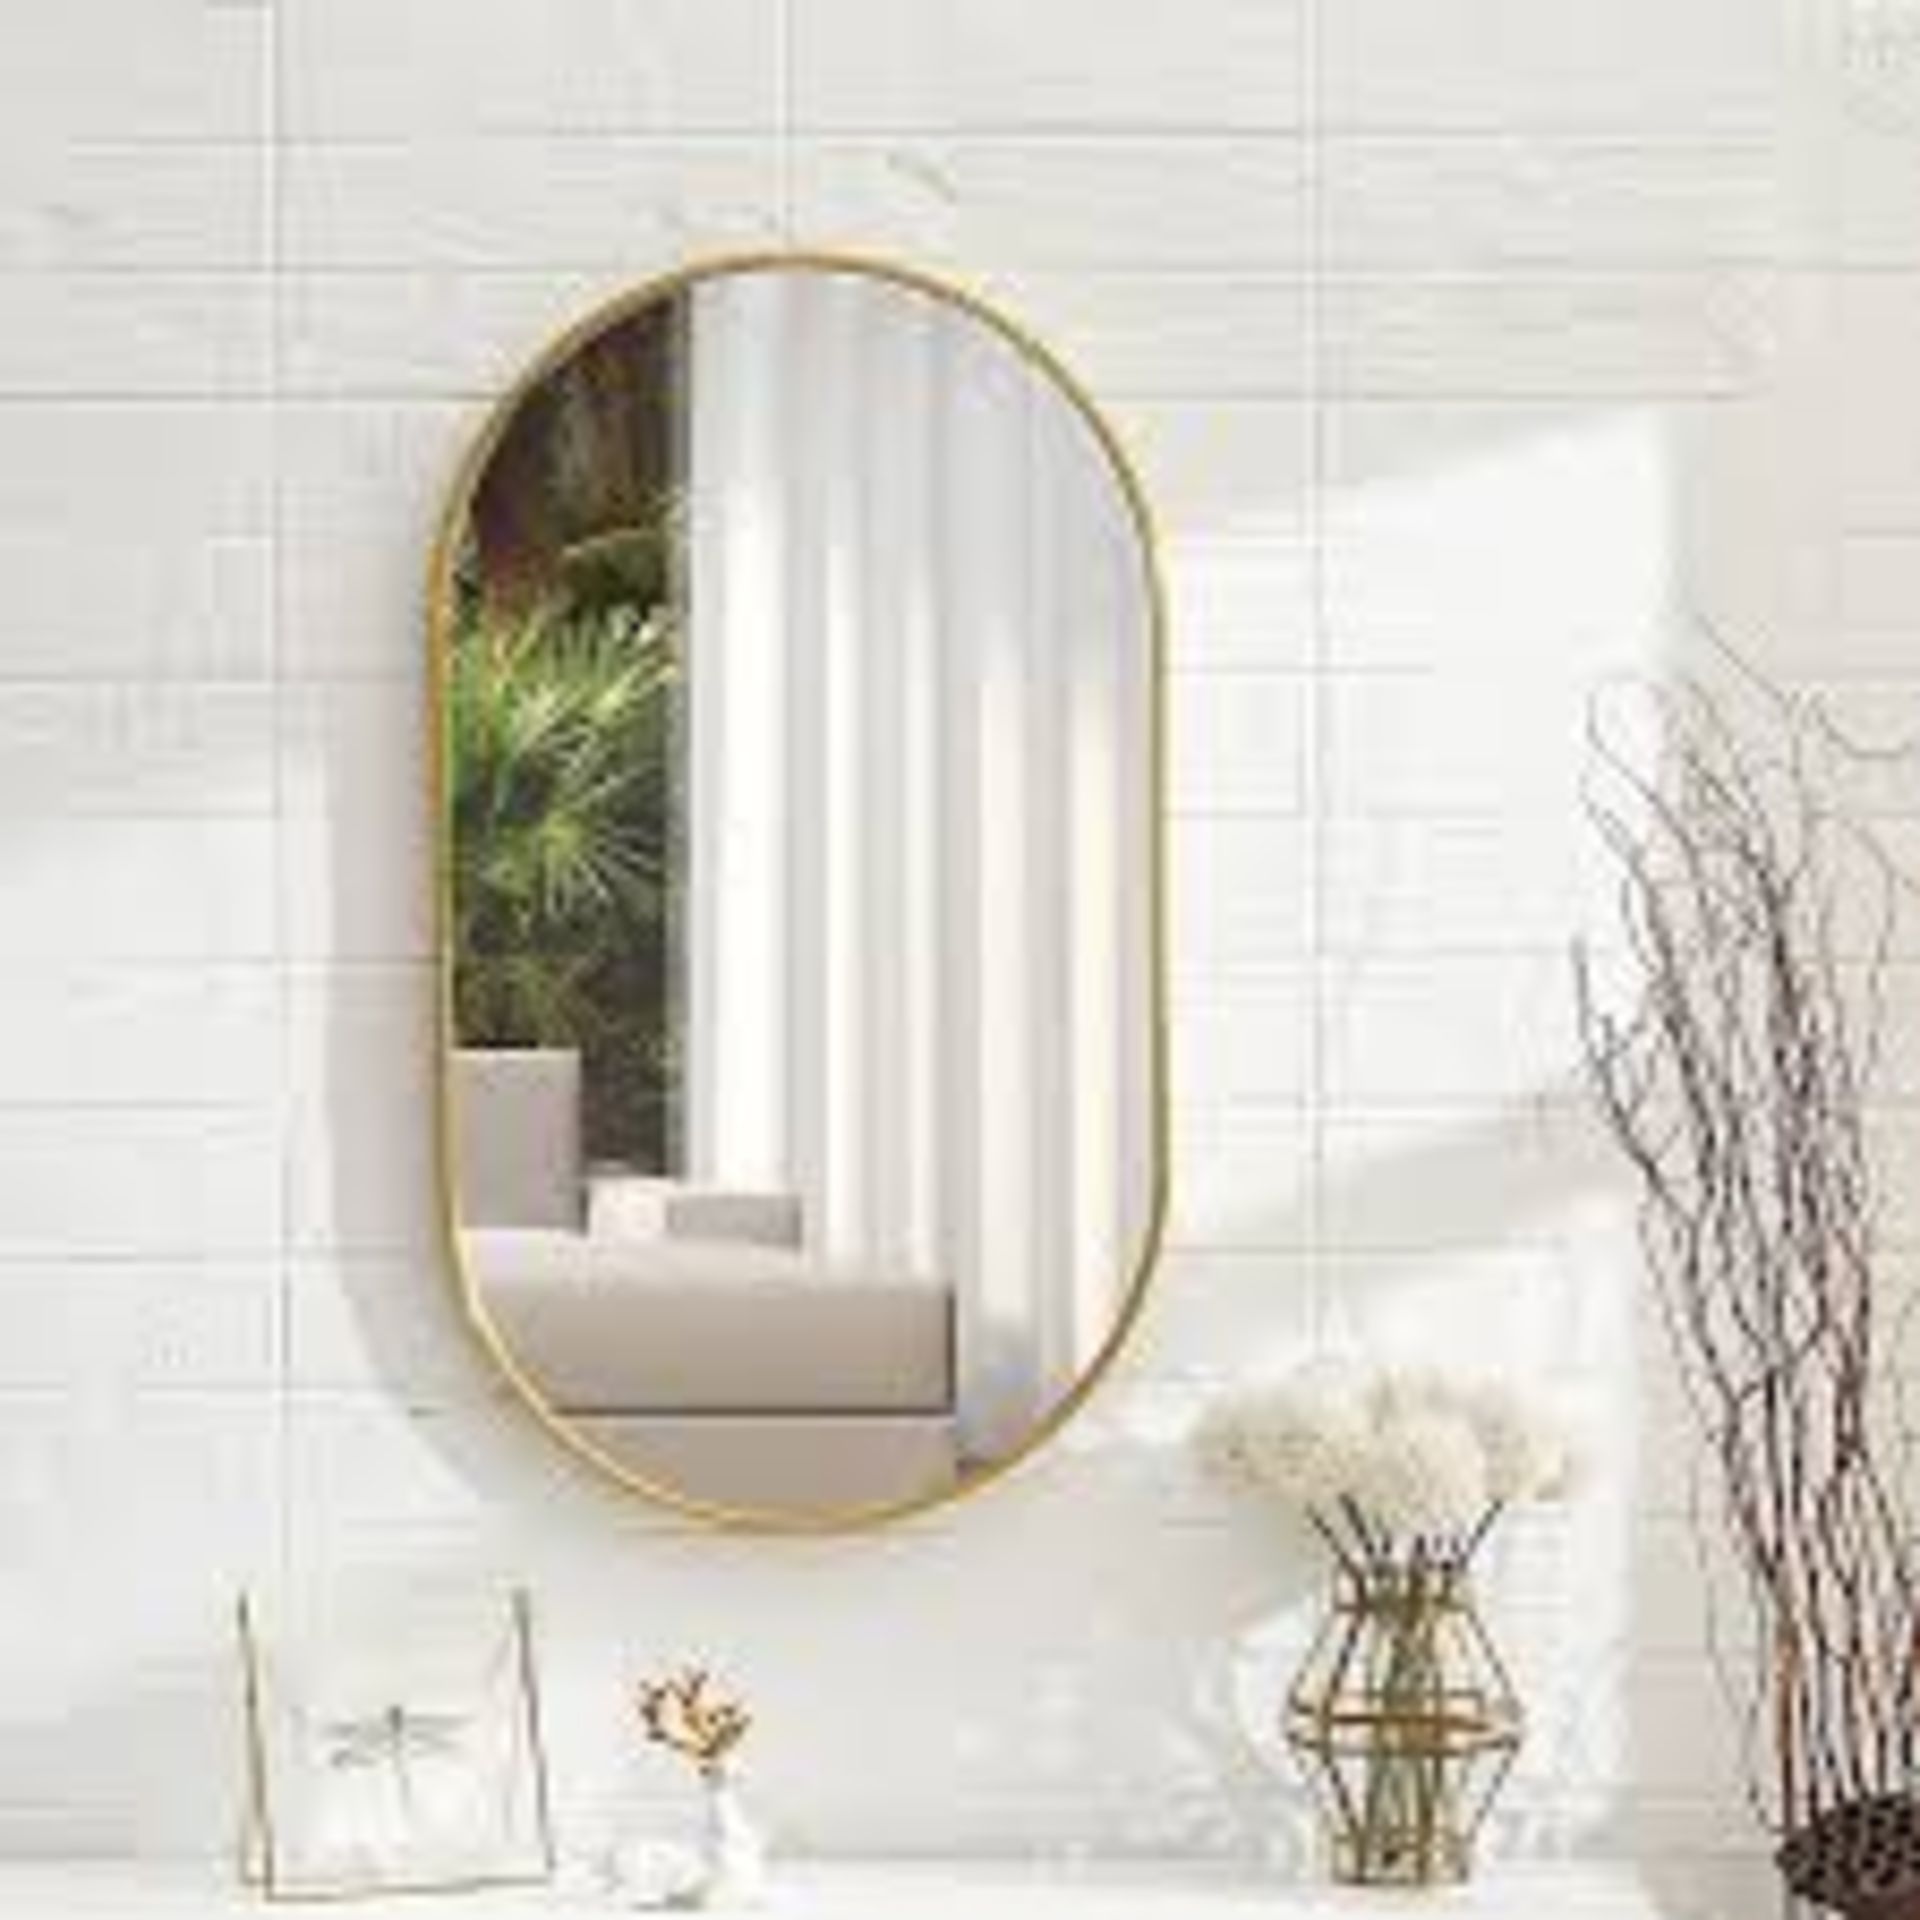 Gold Wall Mounted Oval Bathroom Framed Mirror W 400 x H 700 mm. - R13a.7.